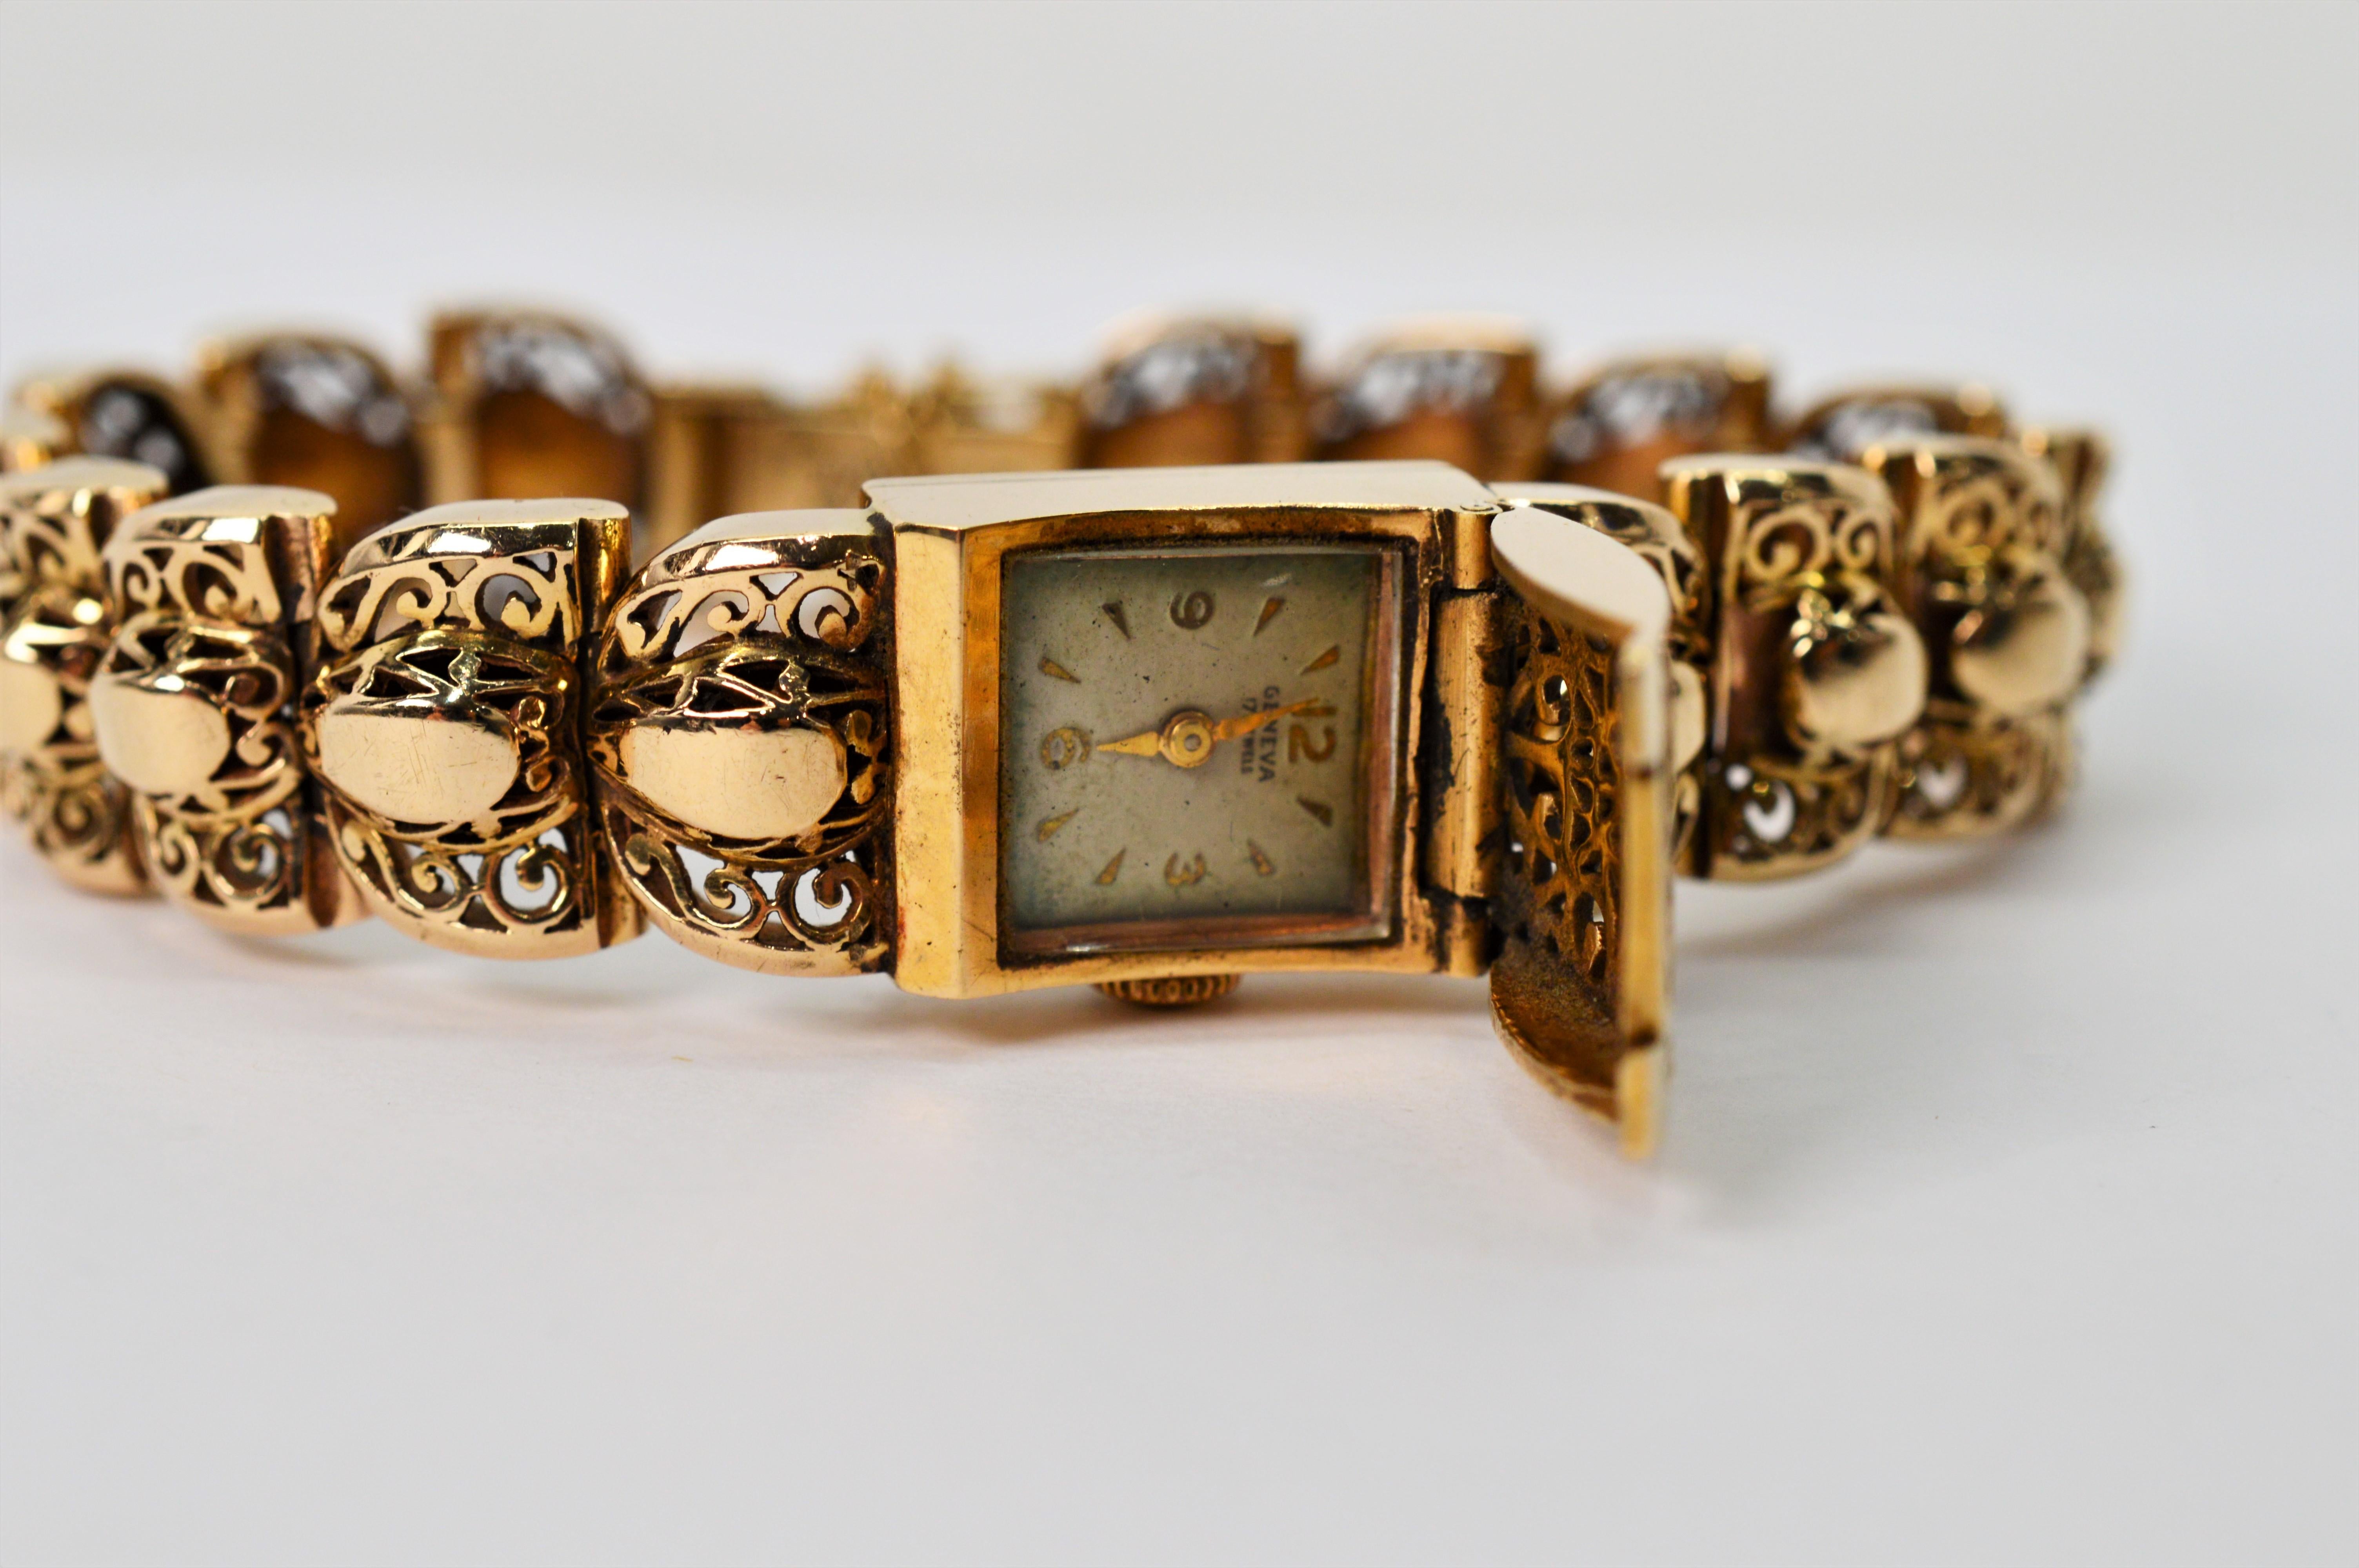 Fancy filigrane Links von vierzehn Karat 14K Gelbgold schaffen die 7-1/2 Zoll Armband dieser 1950's Damenarmbanduhr. Das große, filigrane Armband in der Mitte birgt eine Genfer Handaufzugsuhr mit 17 Steinen, weißem Zifferblatt und goldenen Zeigern